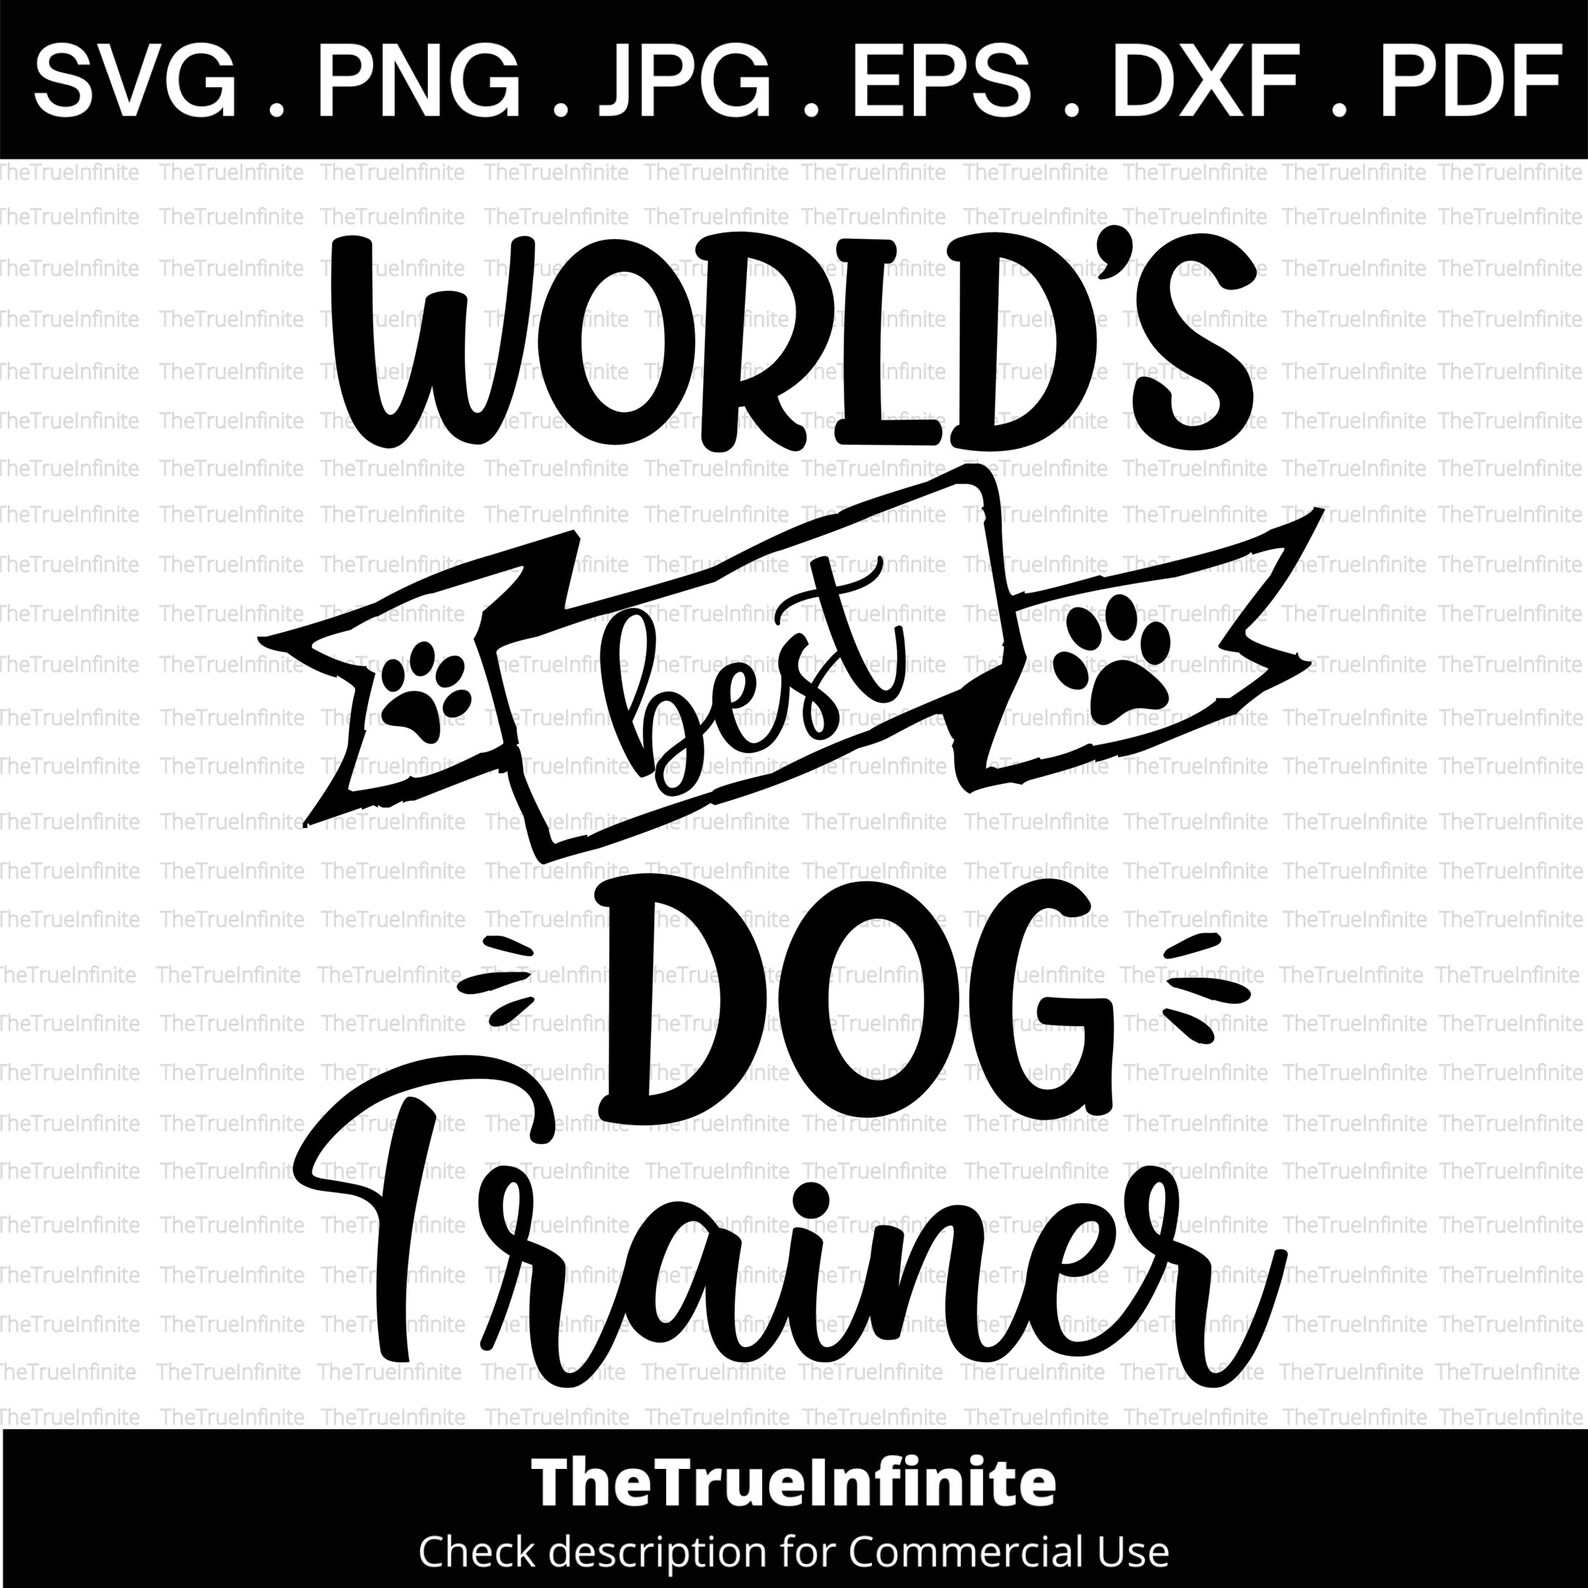 World's Best Dog Trainer Svg dog Trainer Svg Dog Svg - Etsy